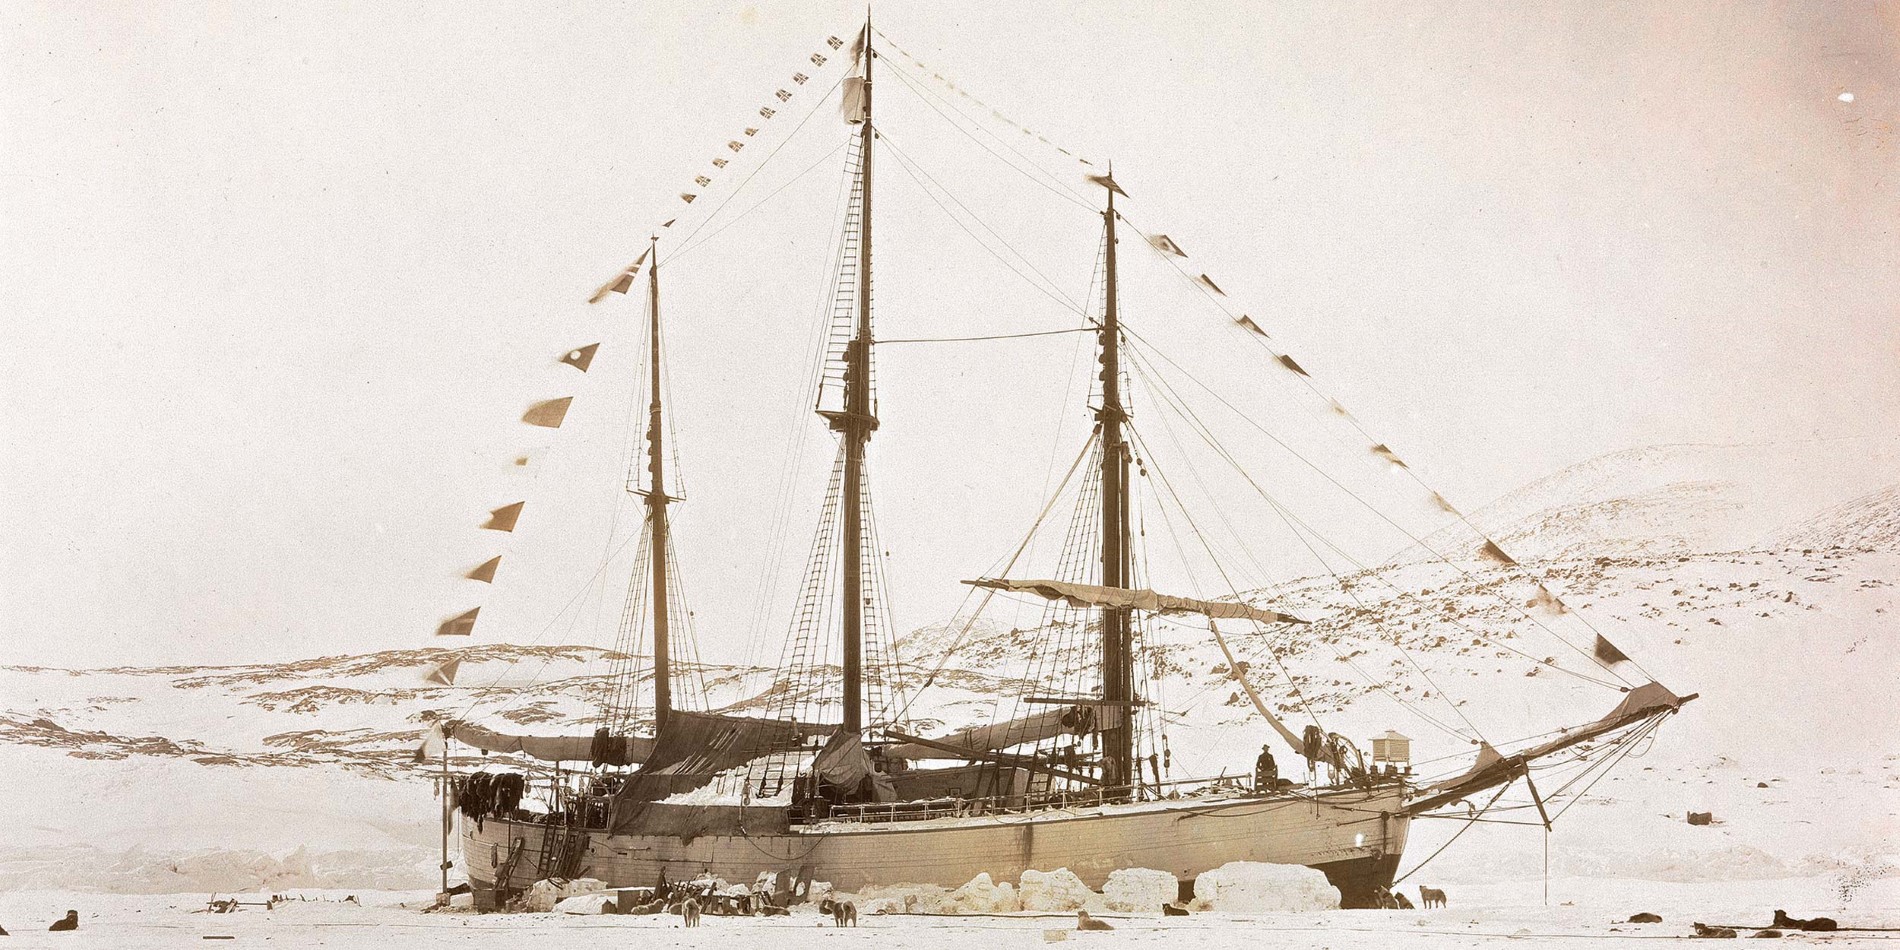 Vi sejler i kølvandet på berømte opdagelsesrejsende og skibe som Fram, og vi har udforsket arktiske farvande siden 1896. 